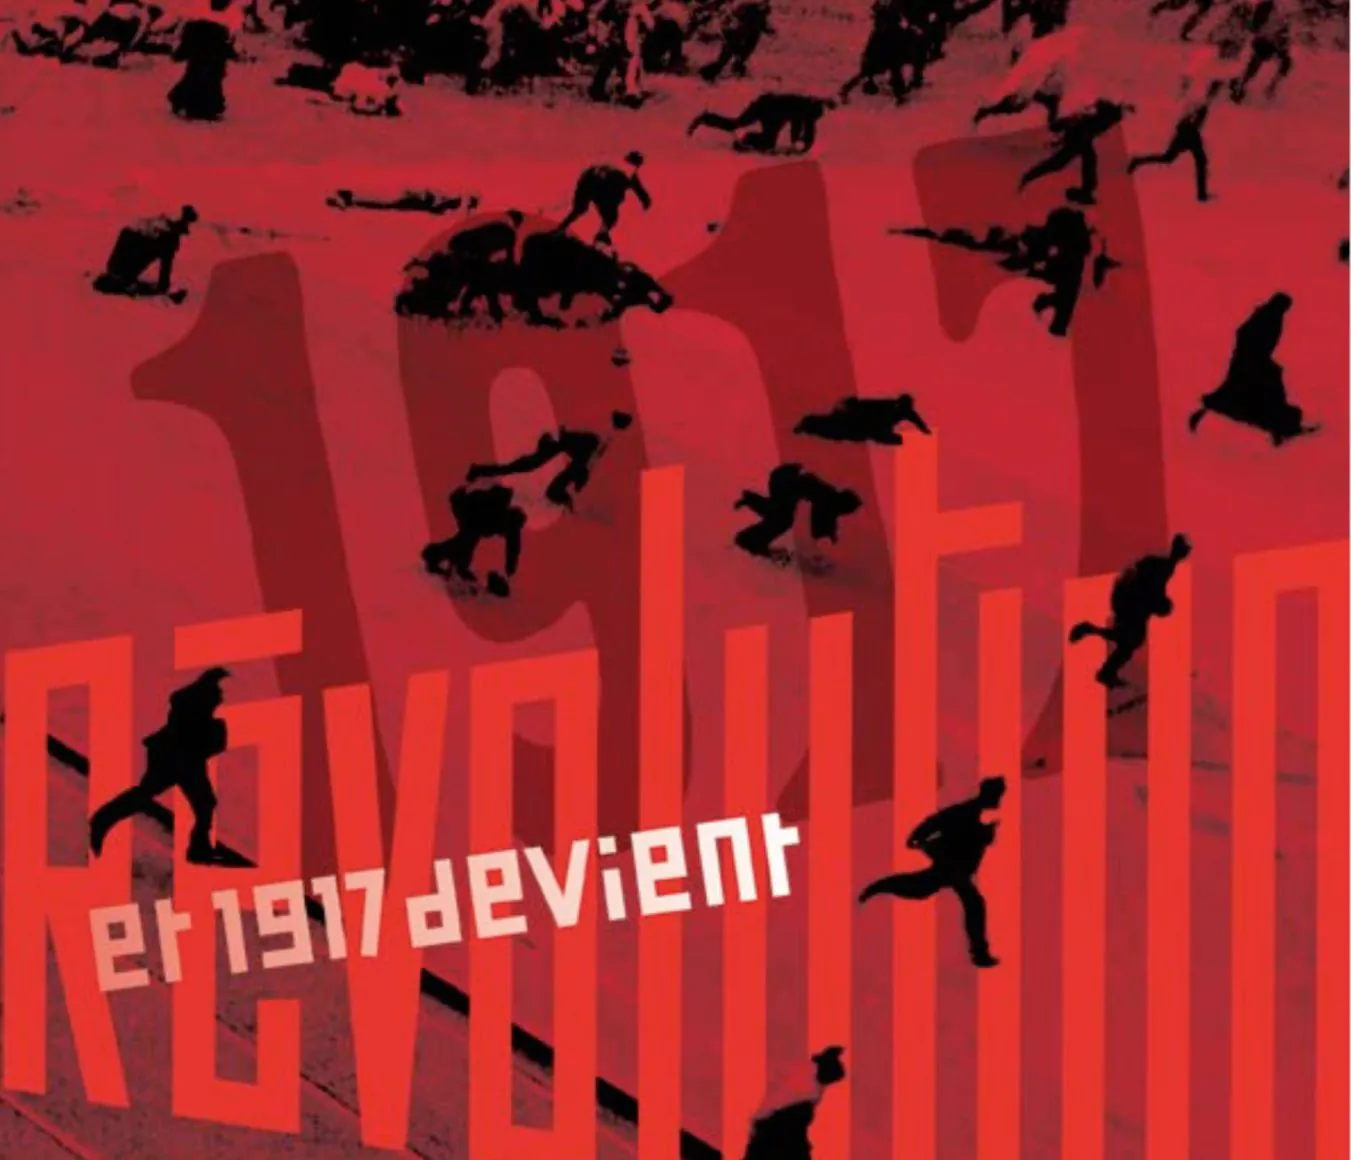 INVALIDES EXPOSITION ET 1917 DEVIENT RÉVOLUTION